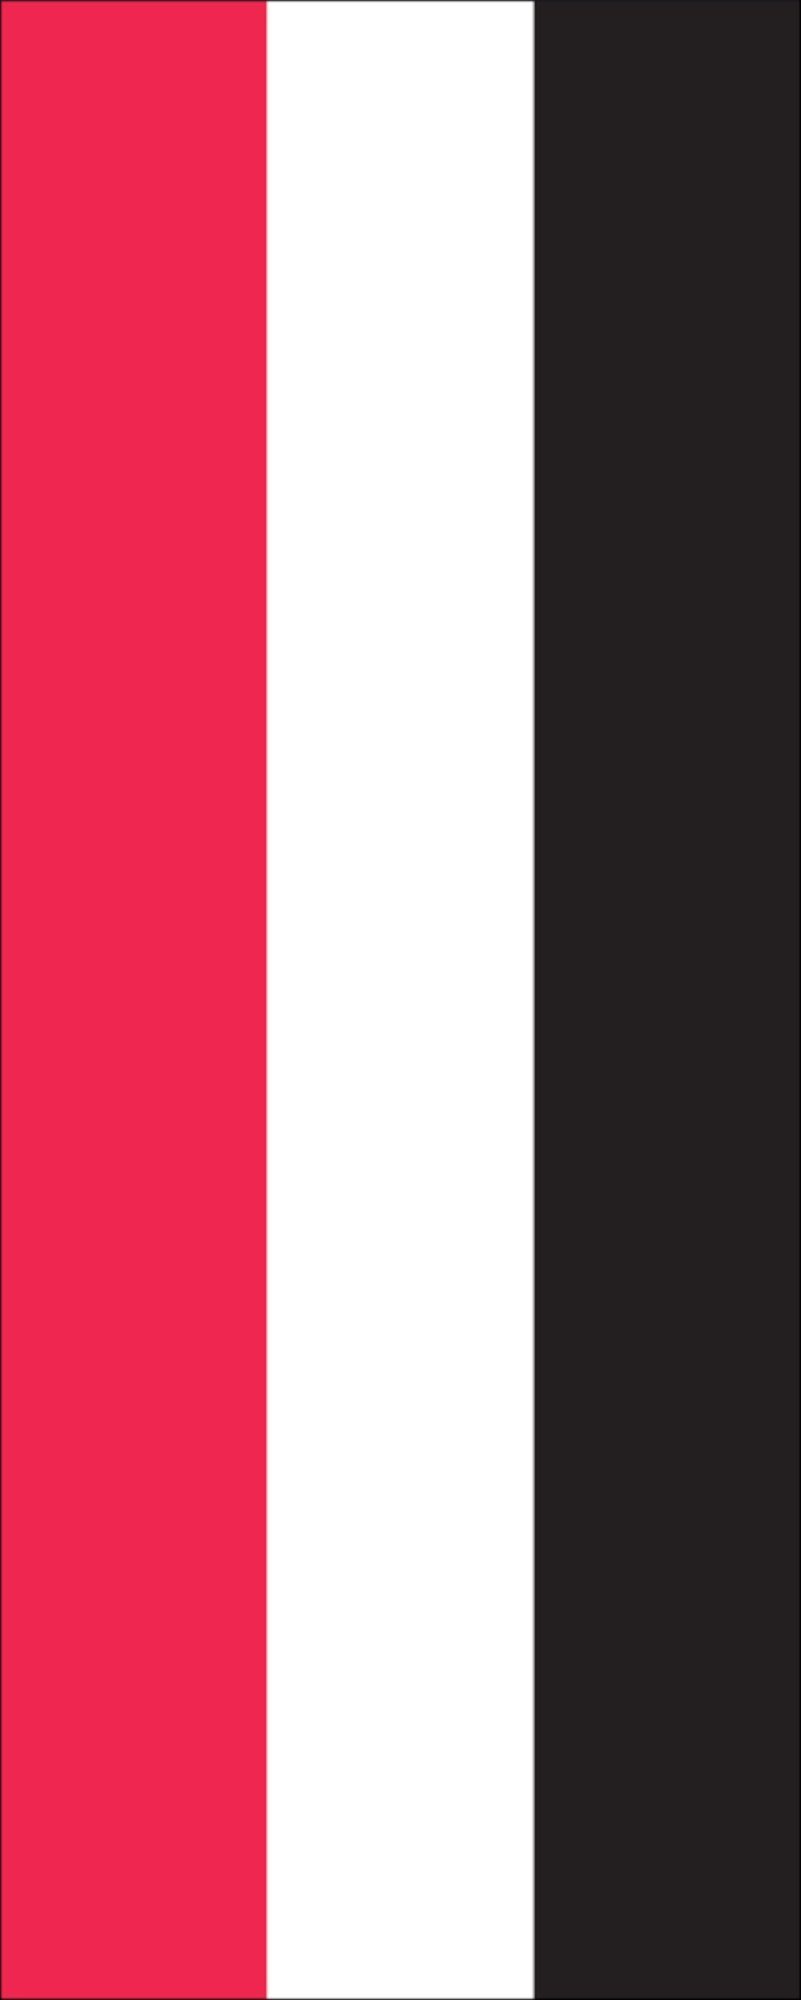 160 Hochformat Jemen Flagge flaggenmeer g/m²